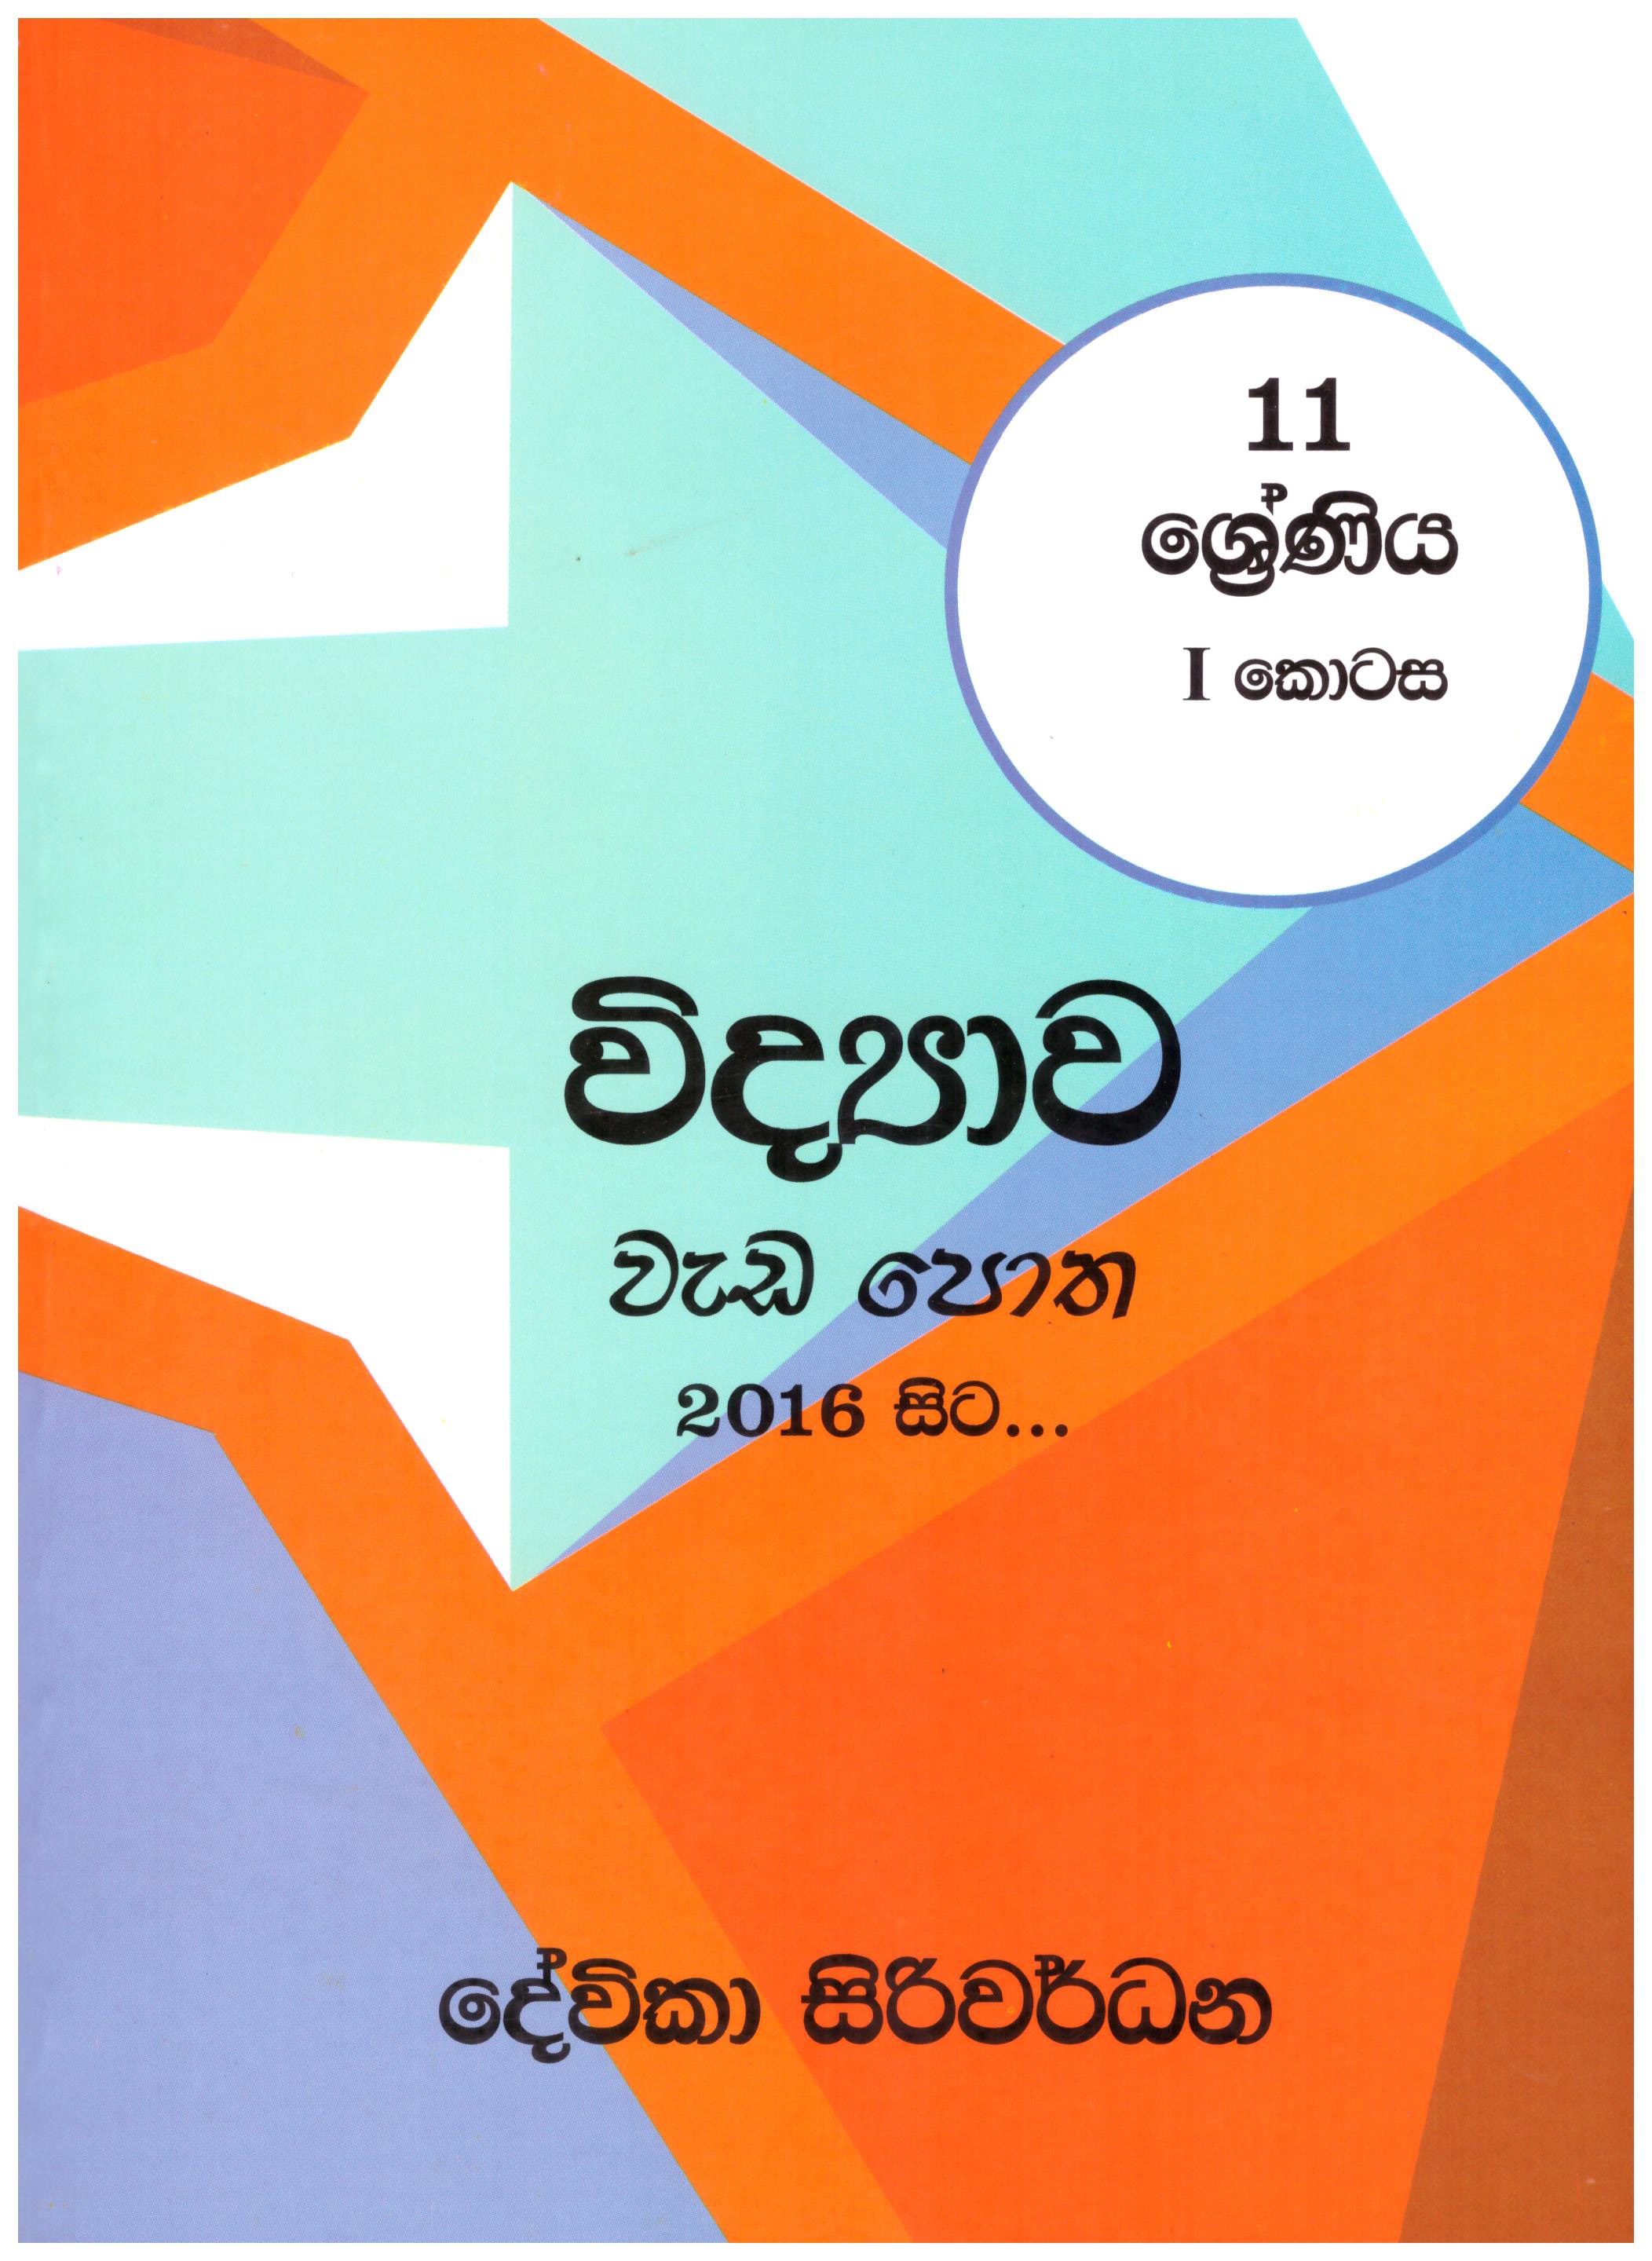 11 Shreniya Vidyawa Wadapotha 1 Kotasa (2016 Sita)